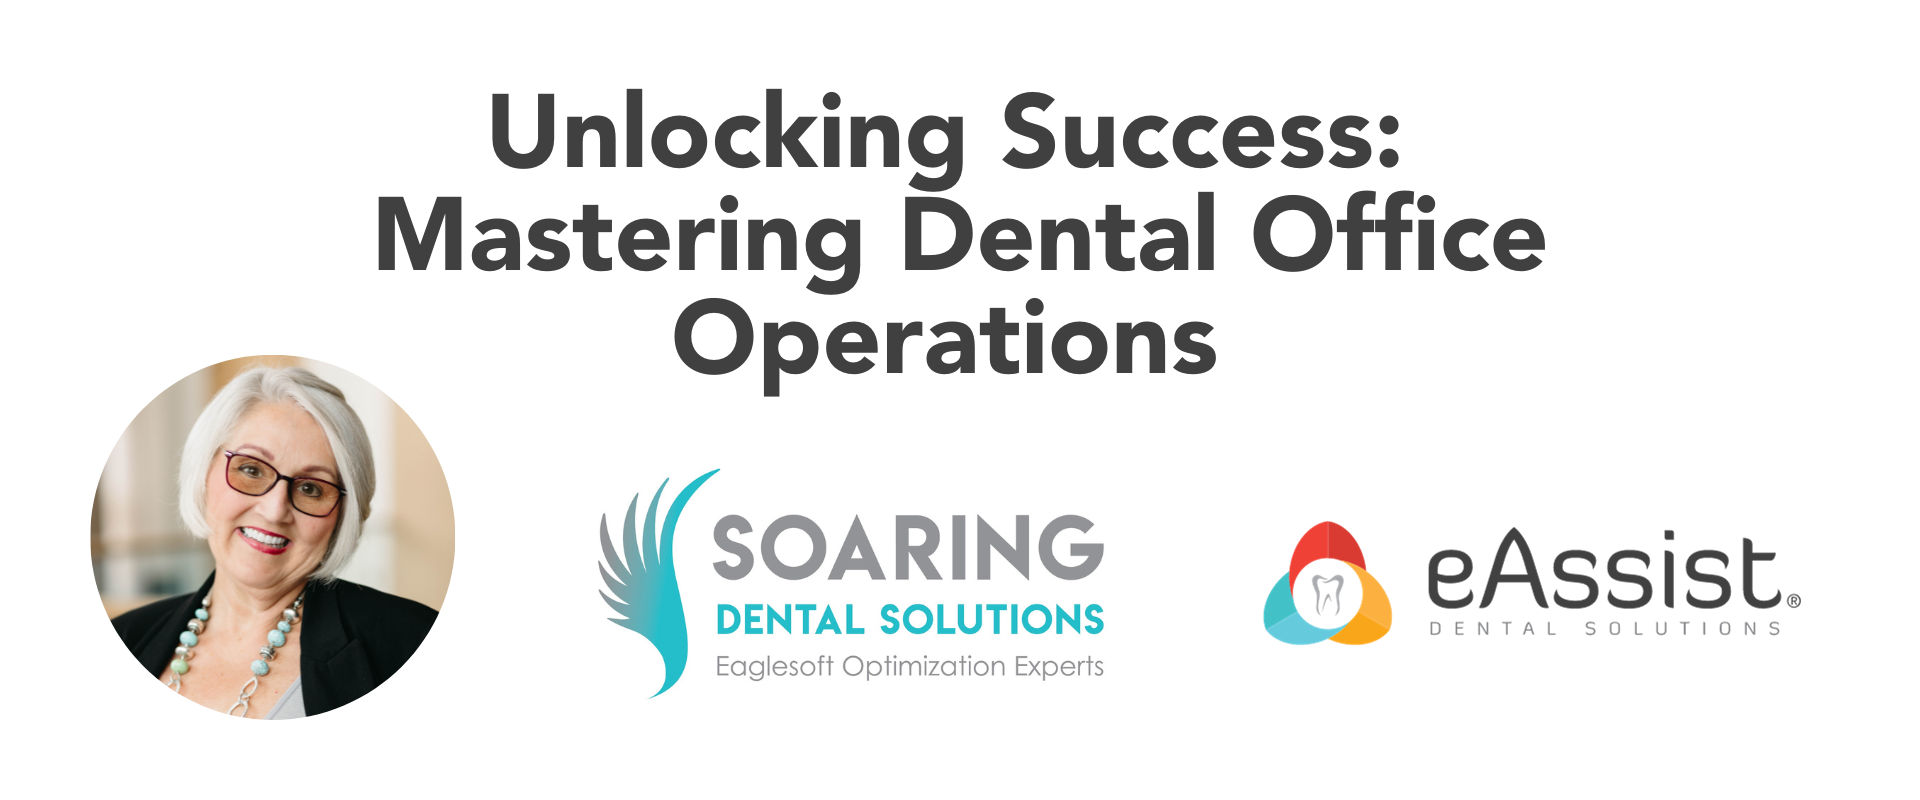 Unlocking Success: Mastering Dental Office Operations